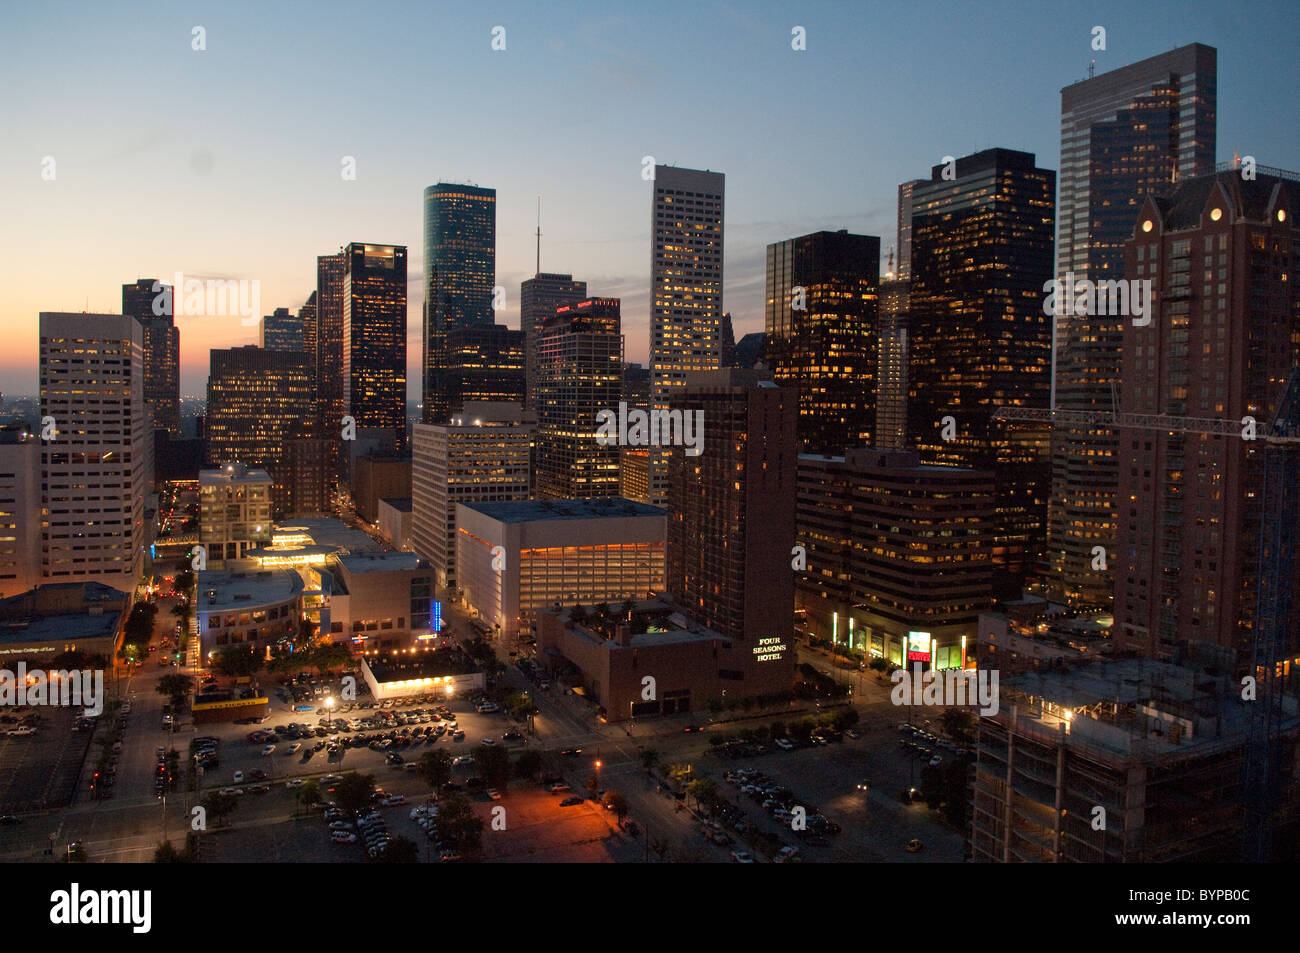 Skyline of downtown Houston, Texas, USA Stock Photo